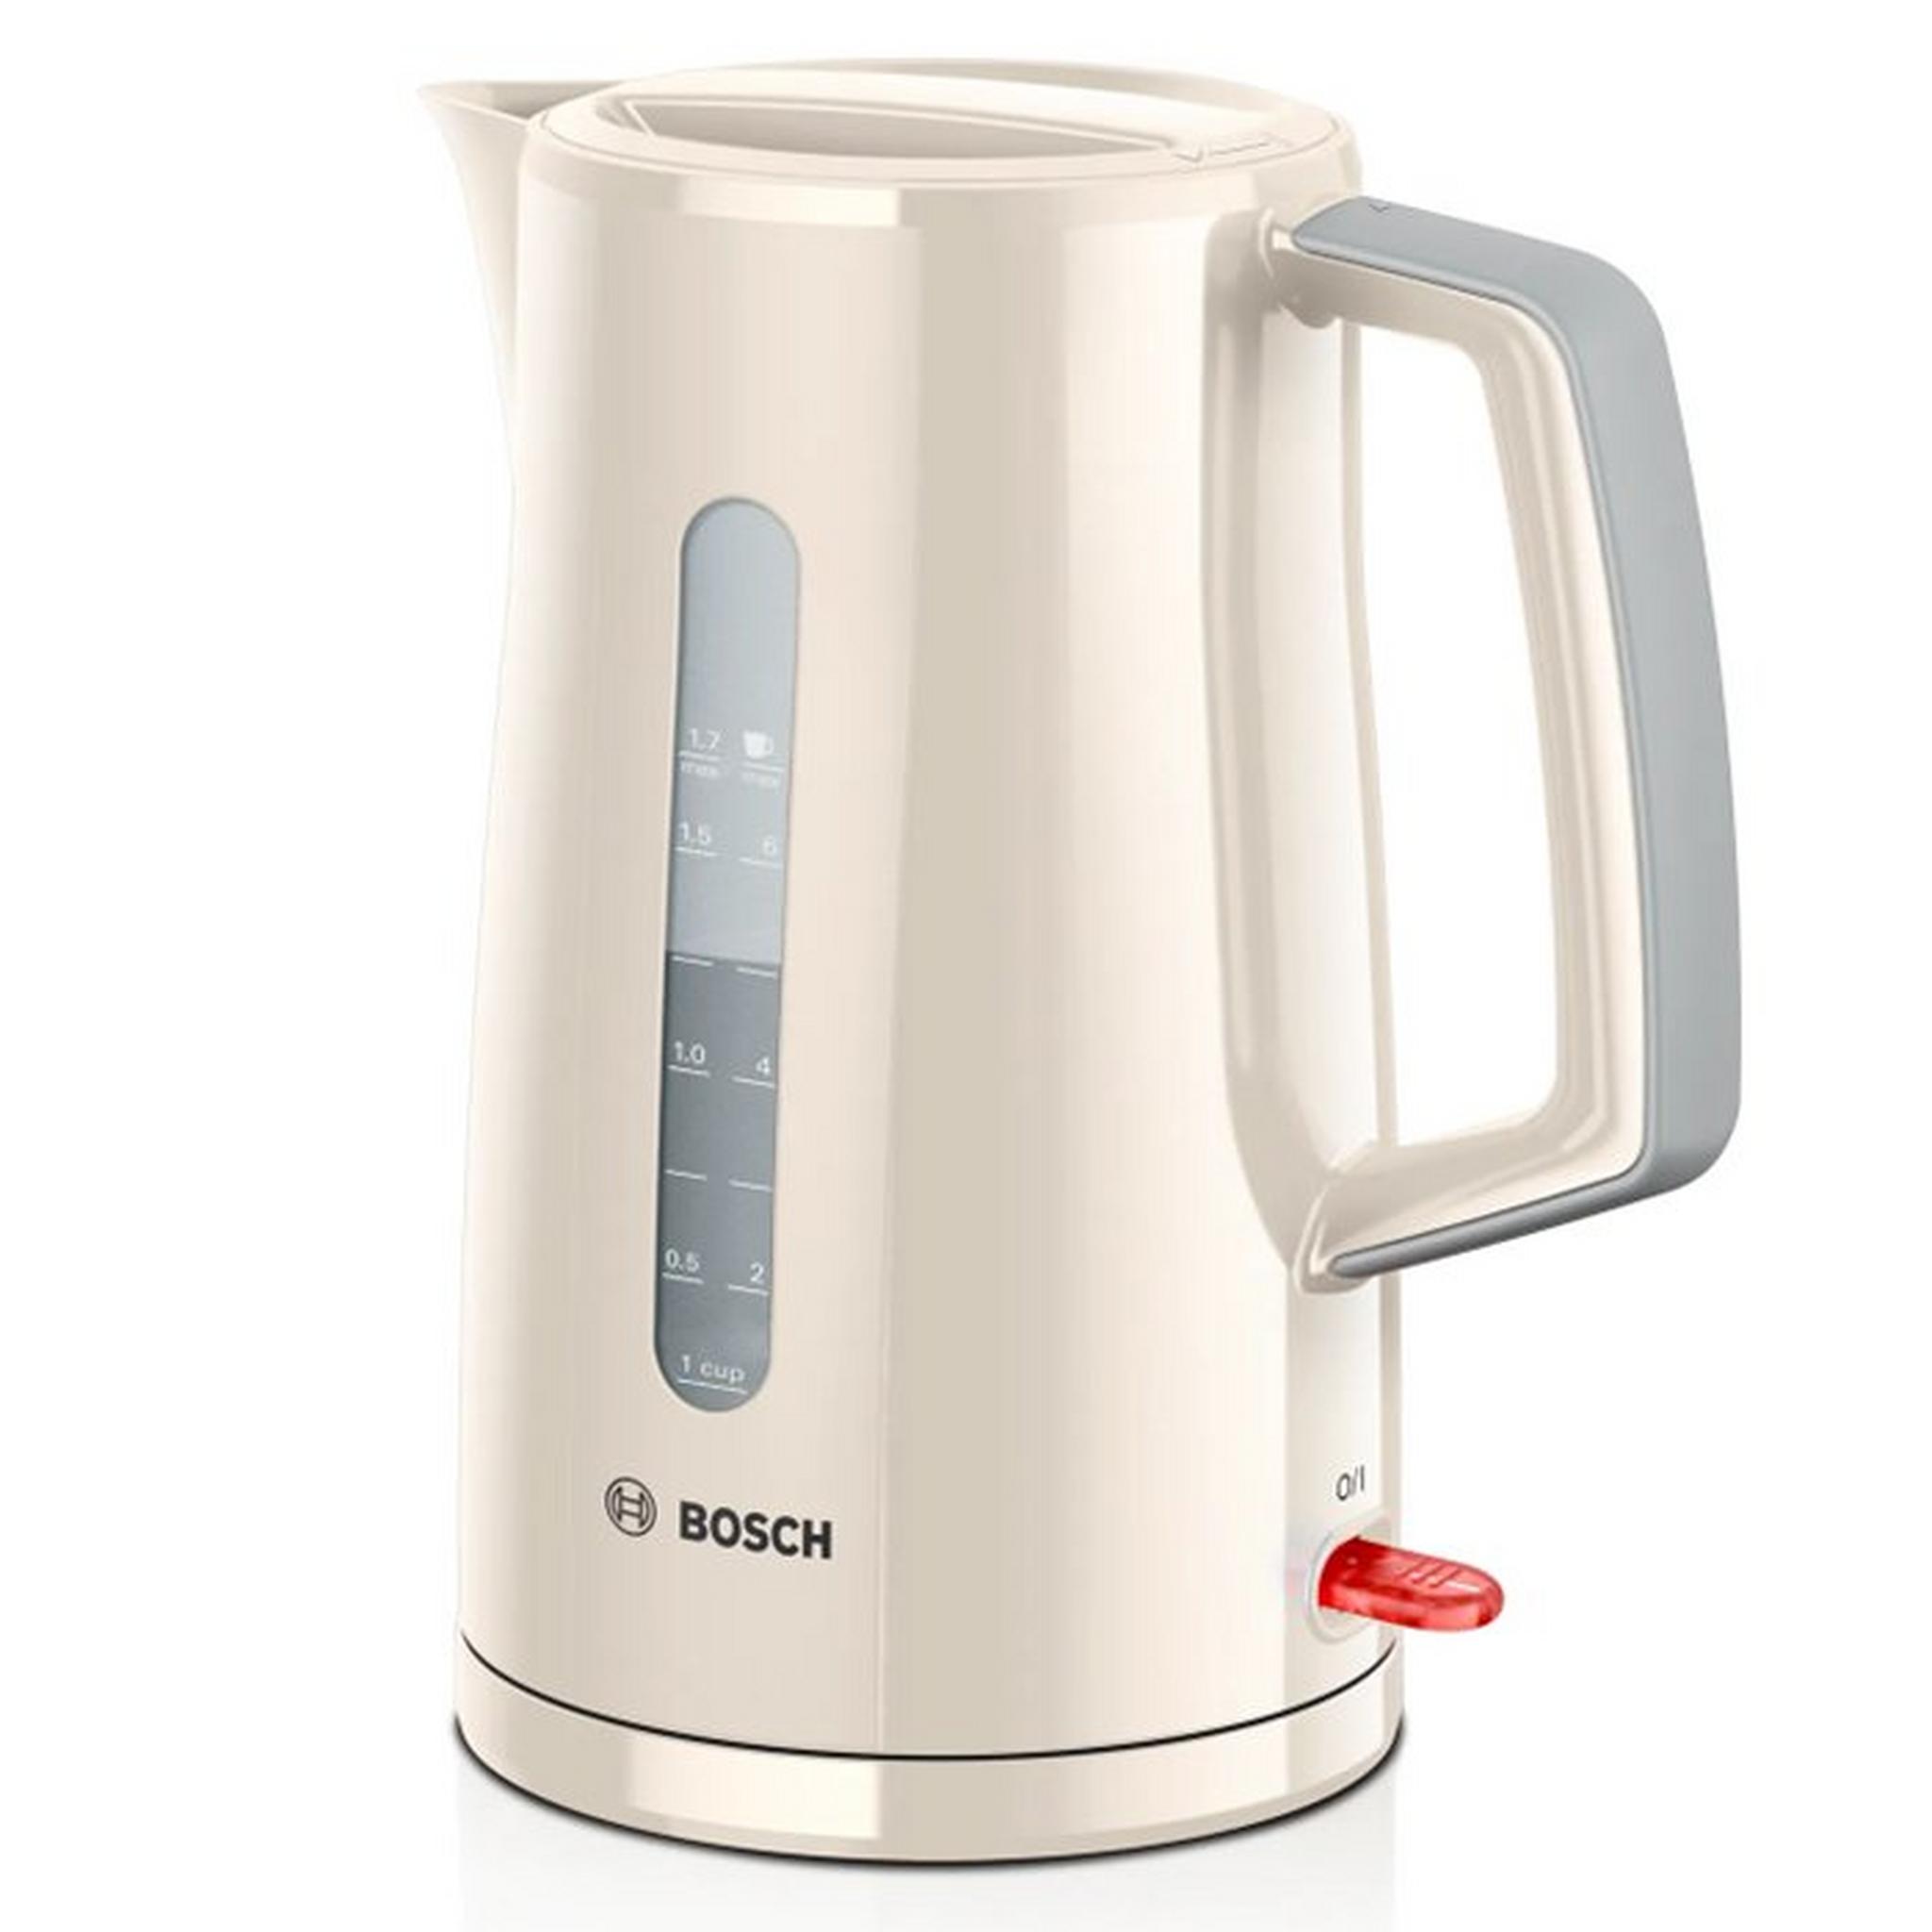 Bosch 3000W Kettle, 1.7L, TWK3A037GB – Cream